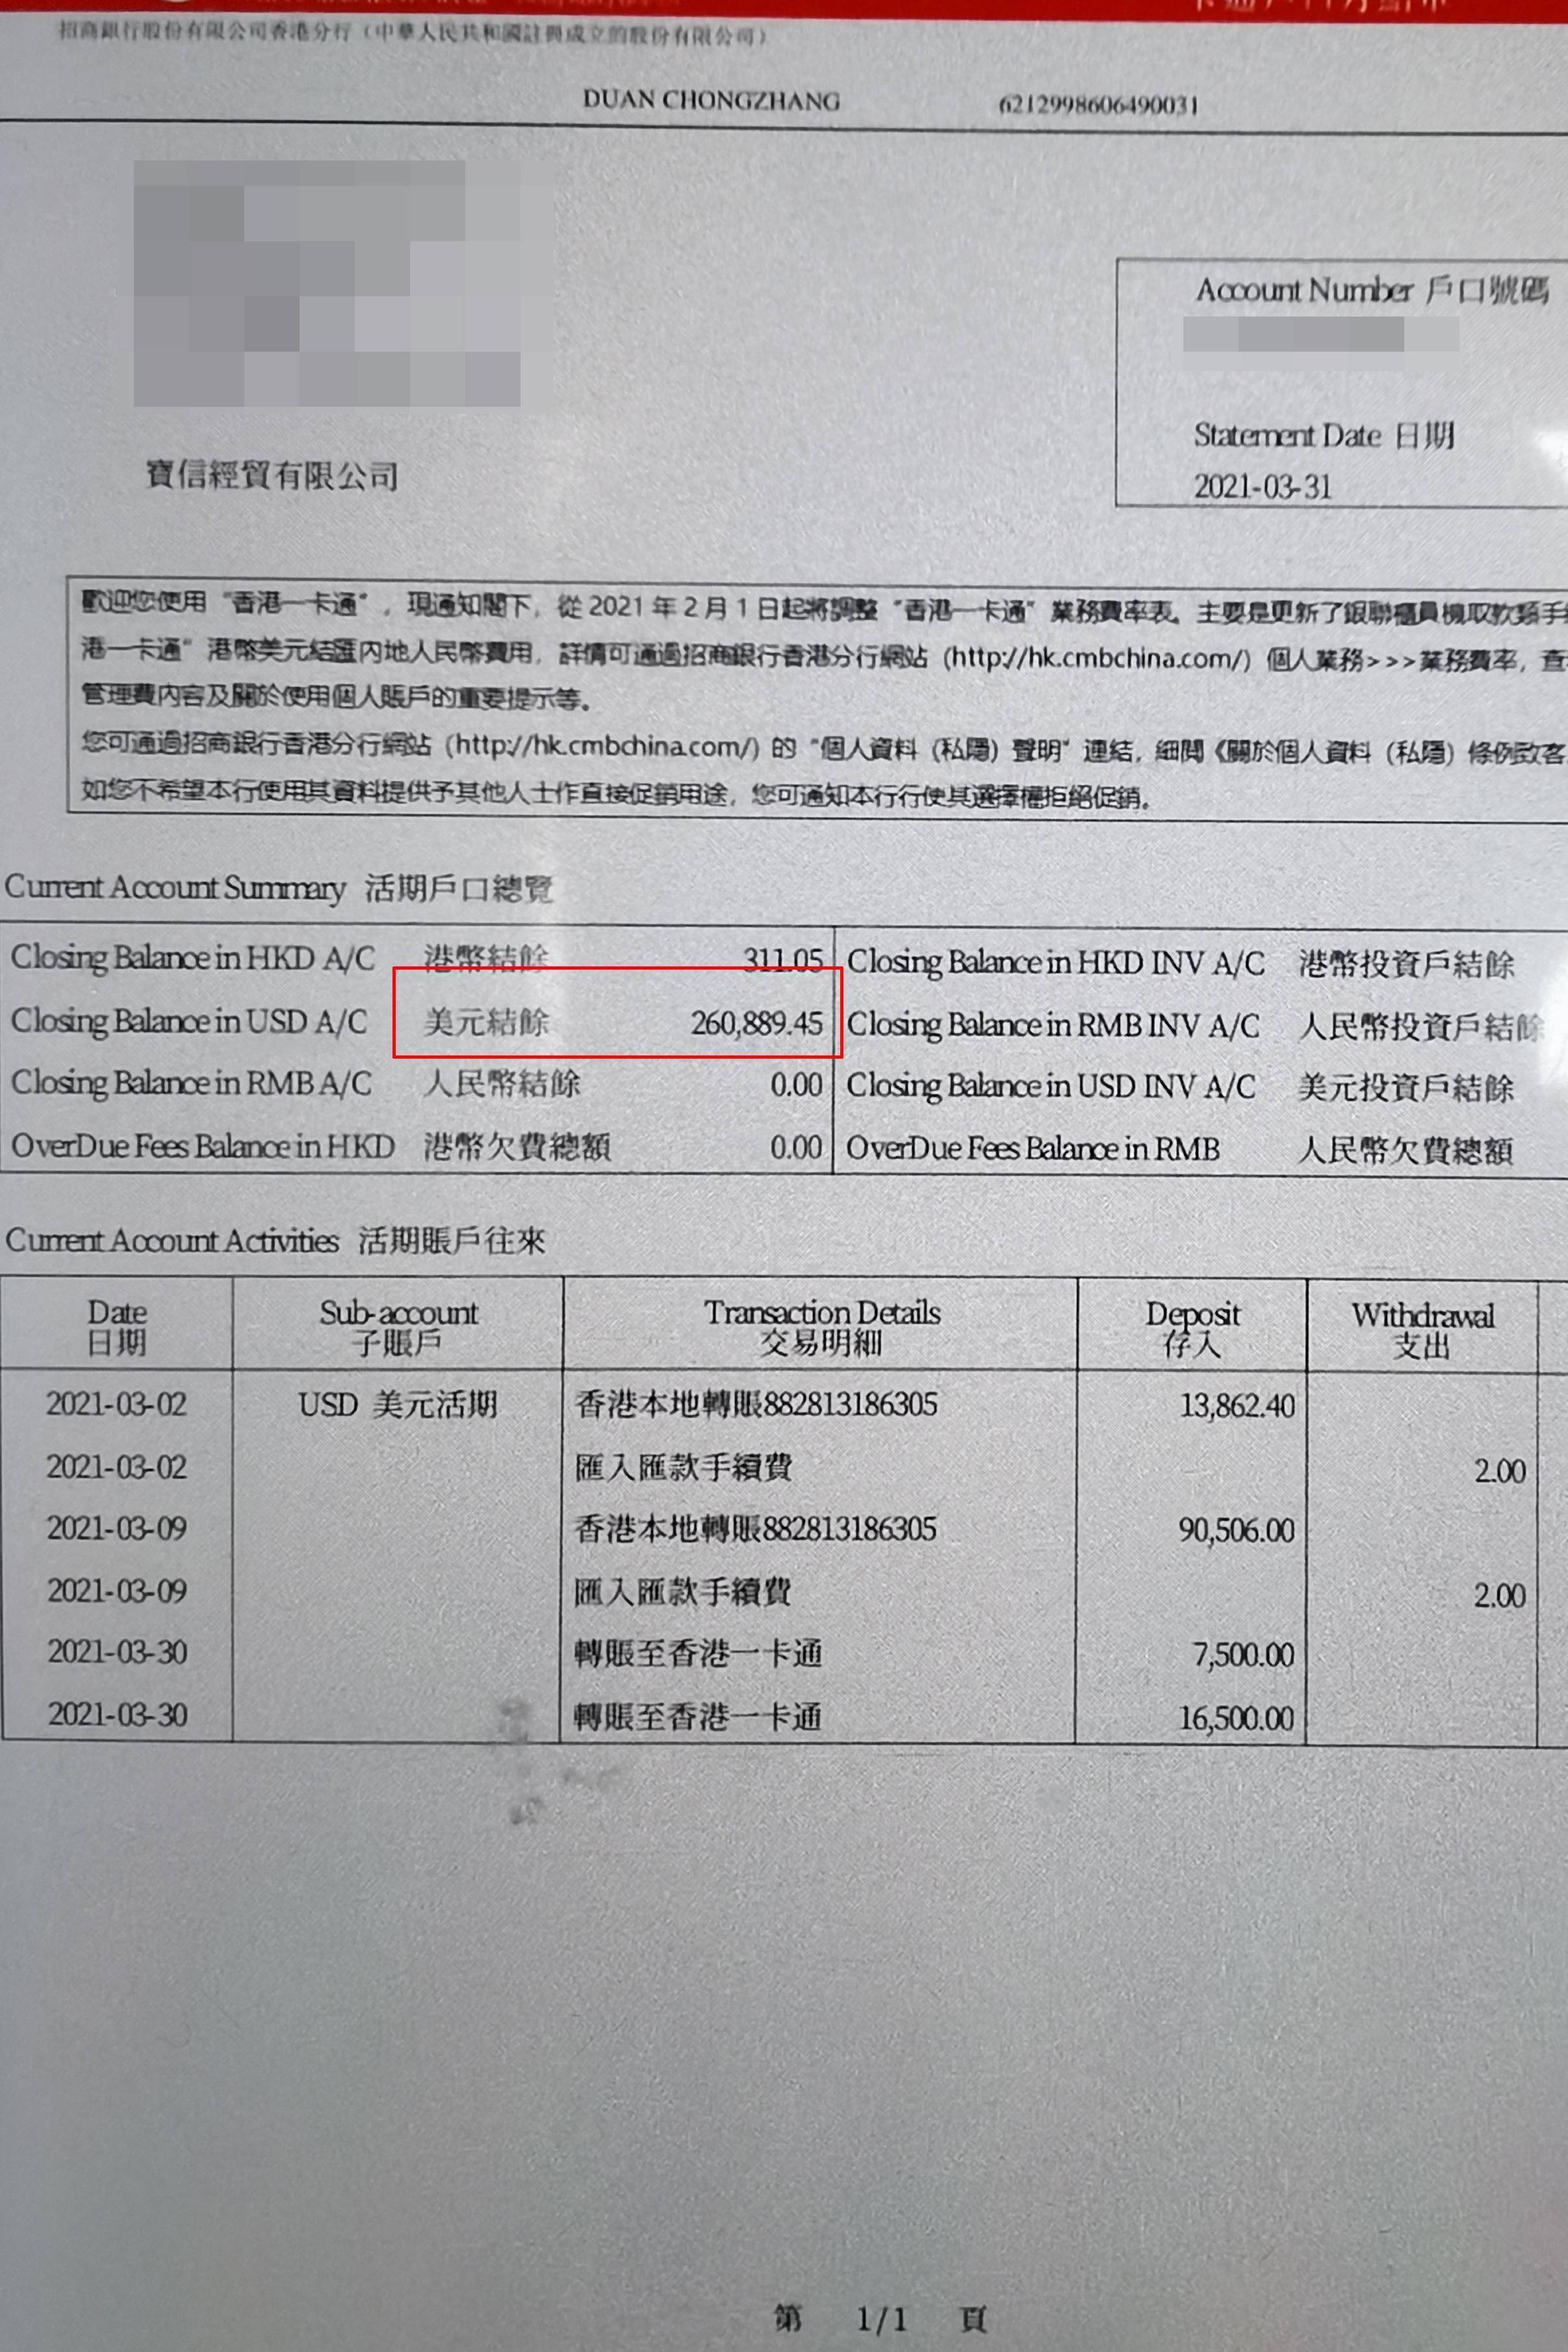 清粉 软件秒取公民信息,上海警方抓获4名犯罪嫌疑人